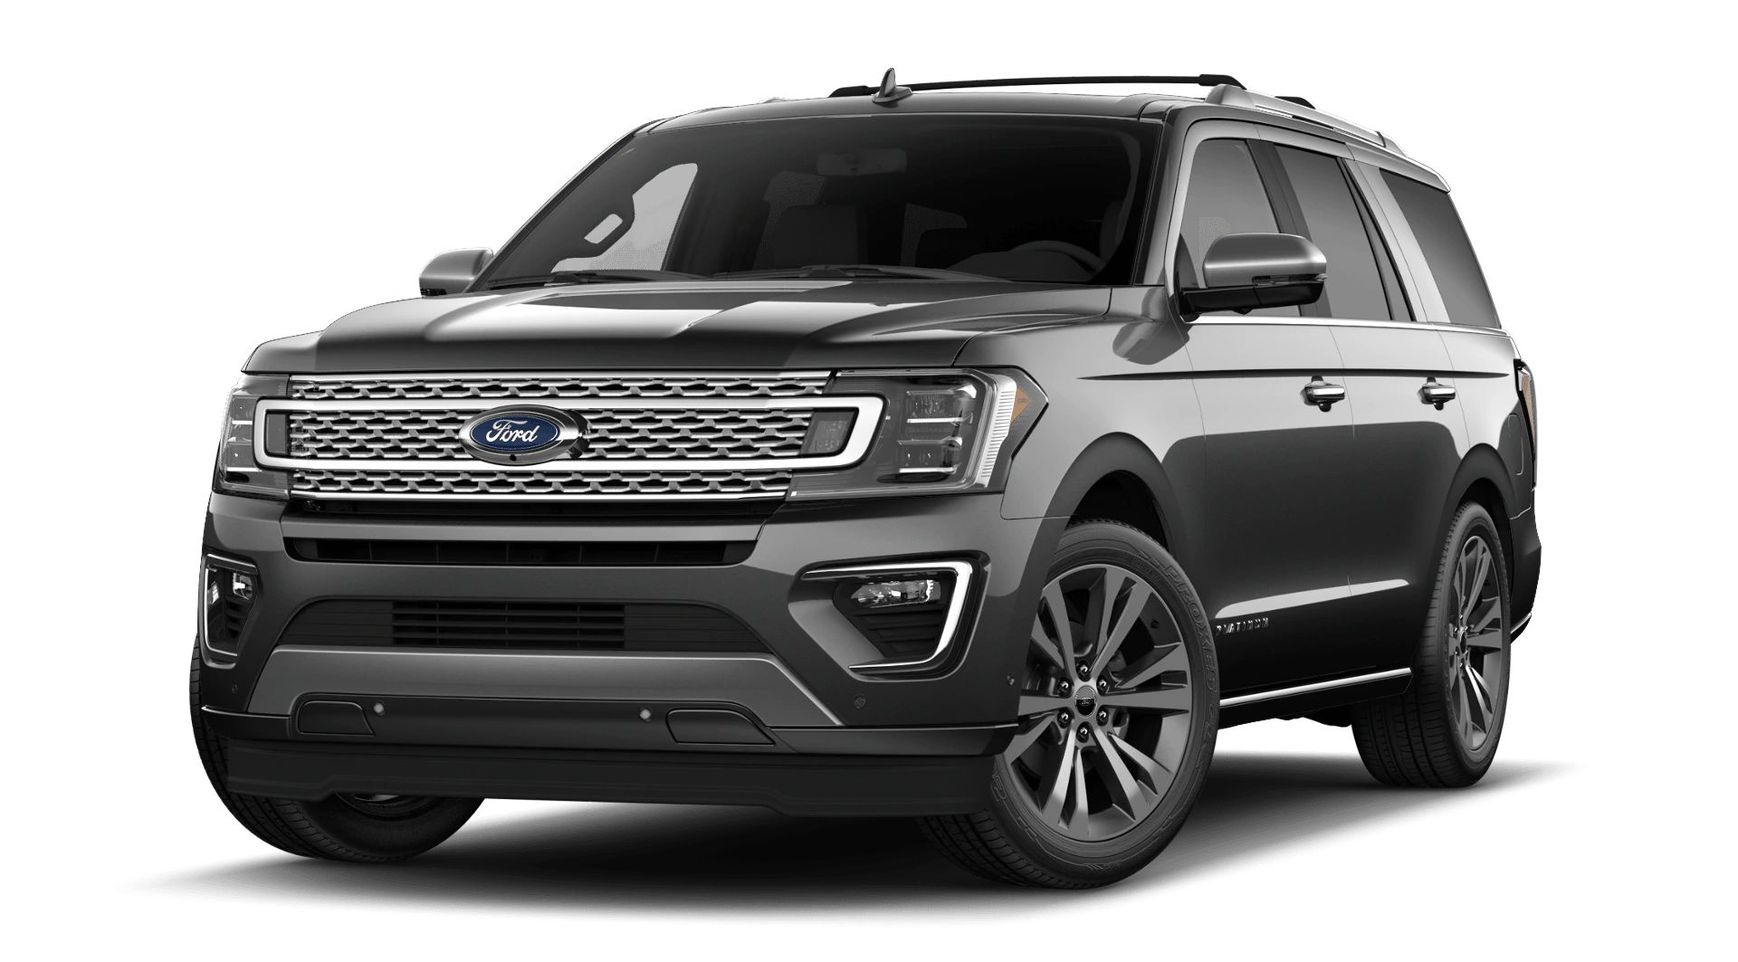 Ford Expedition Platinum 2020 3.5 V6 EcoBoost® Forced Бензин 10 ст АКПП Полный  